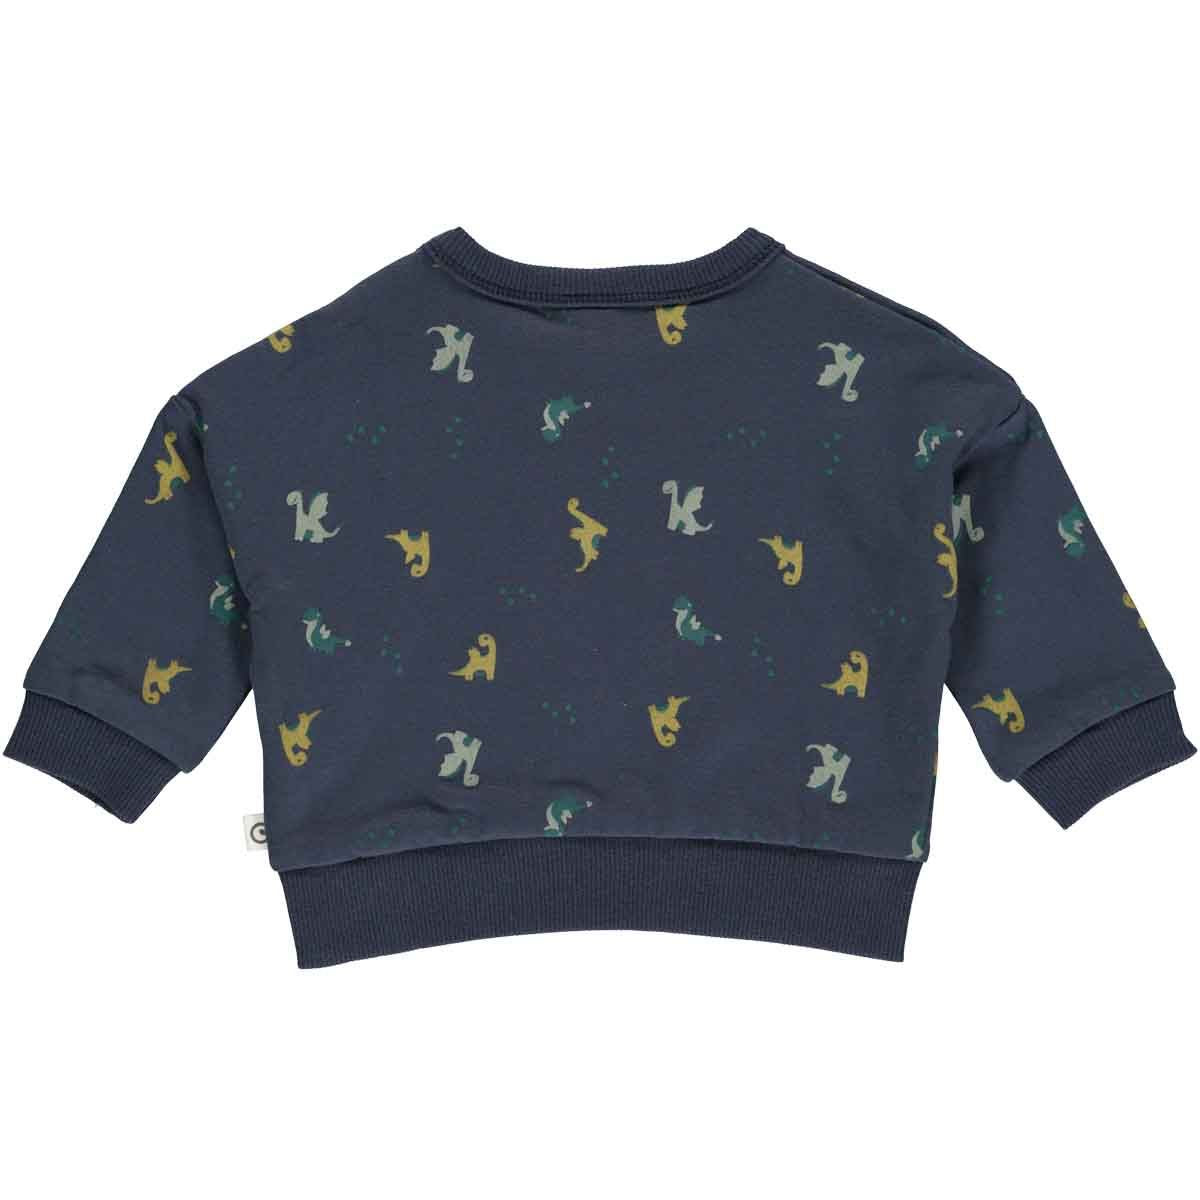 donkerblauwe baby sweater met draakjes print, foto van de achterkant